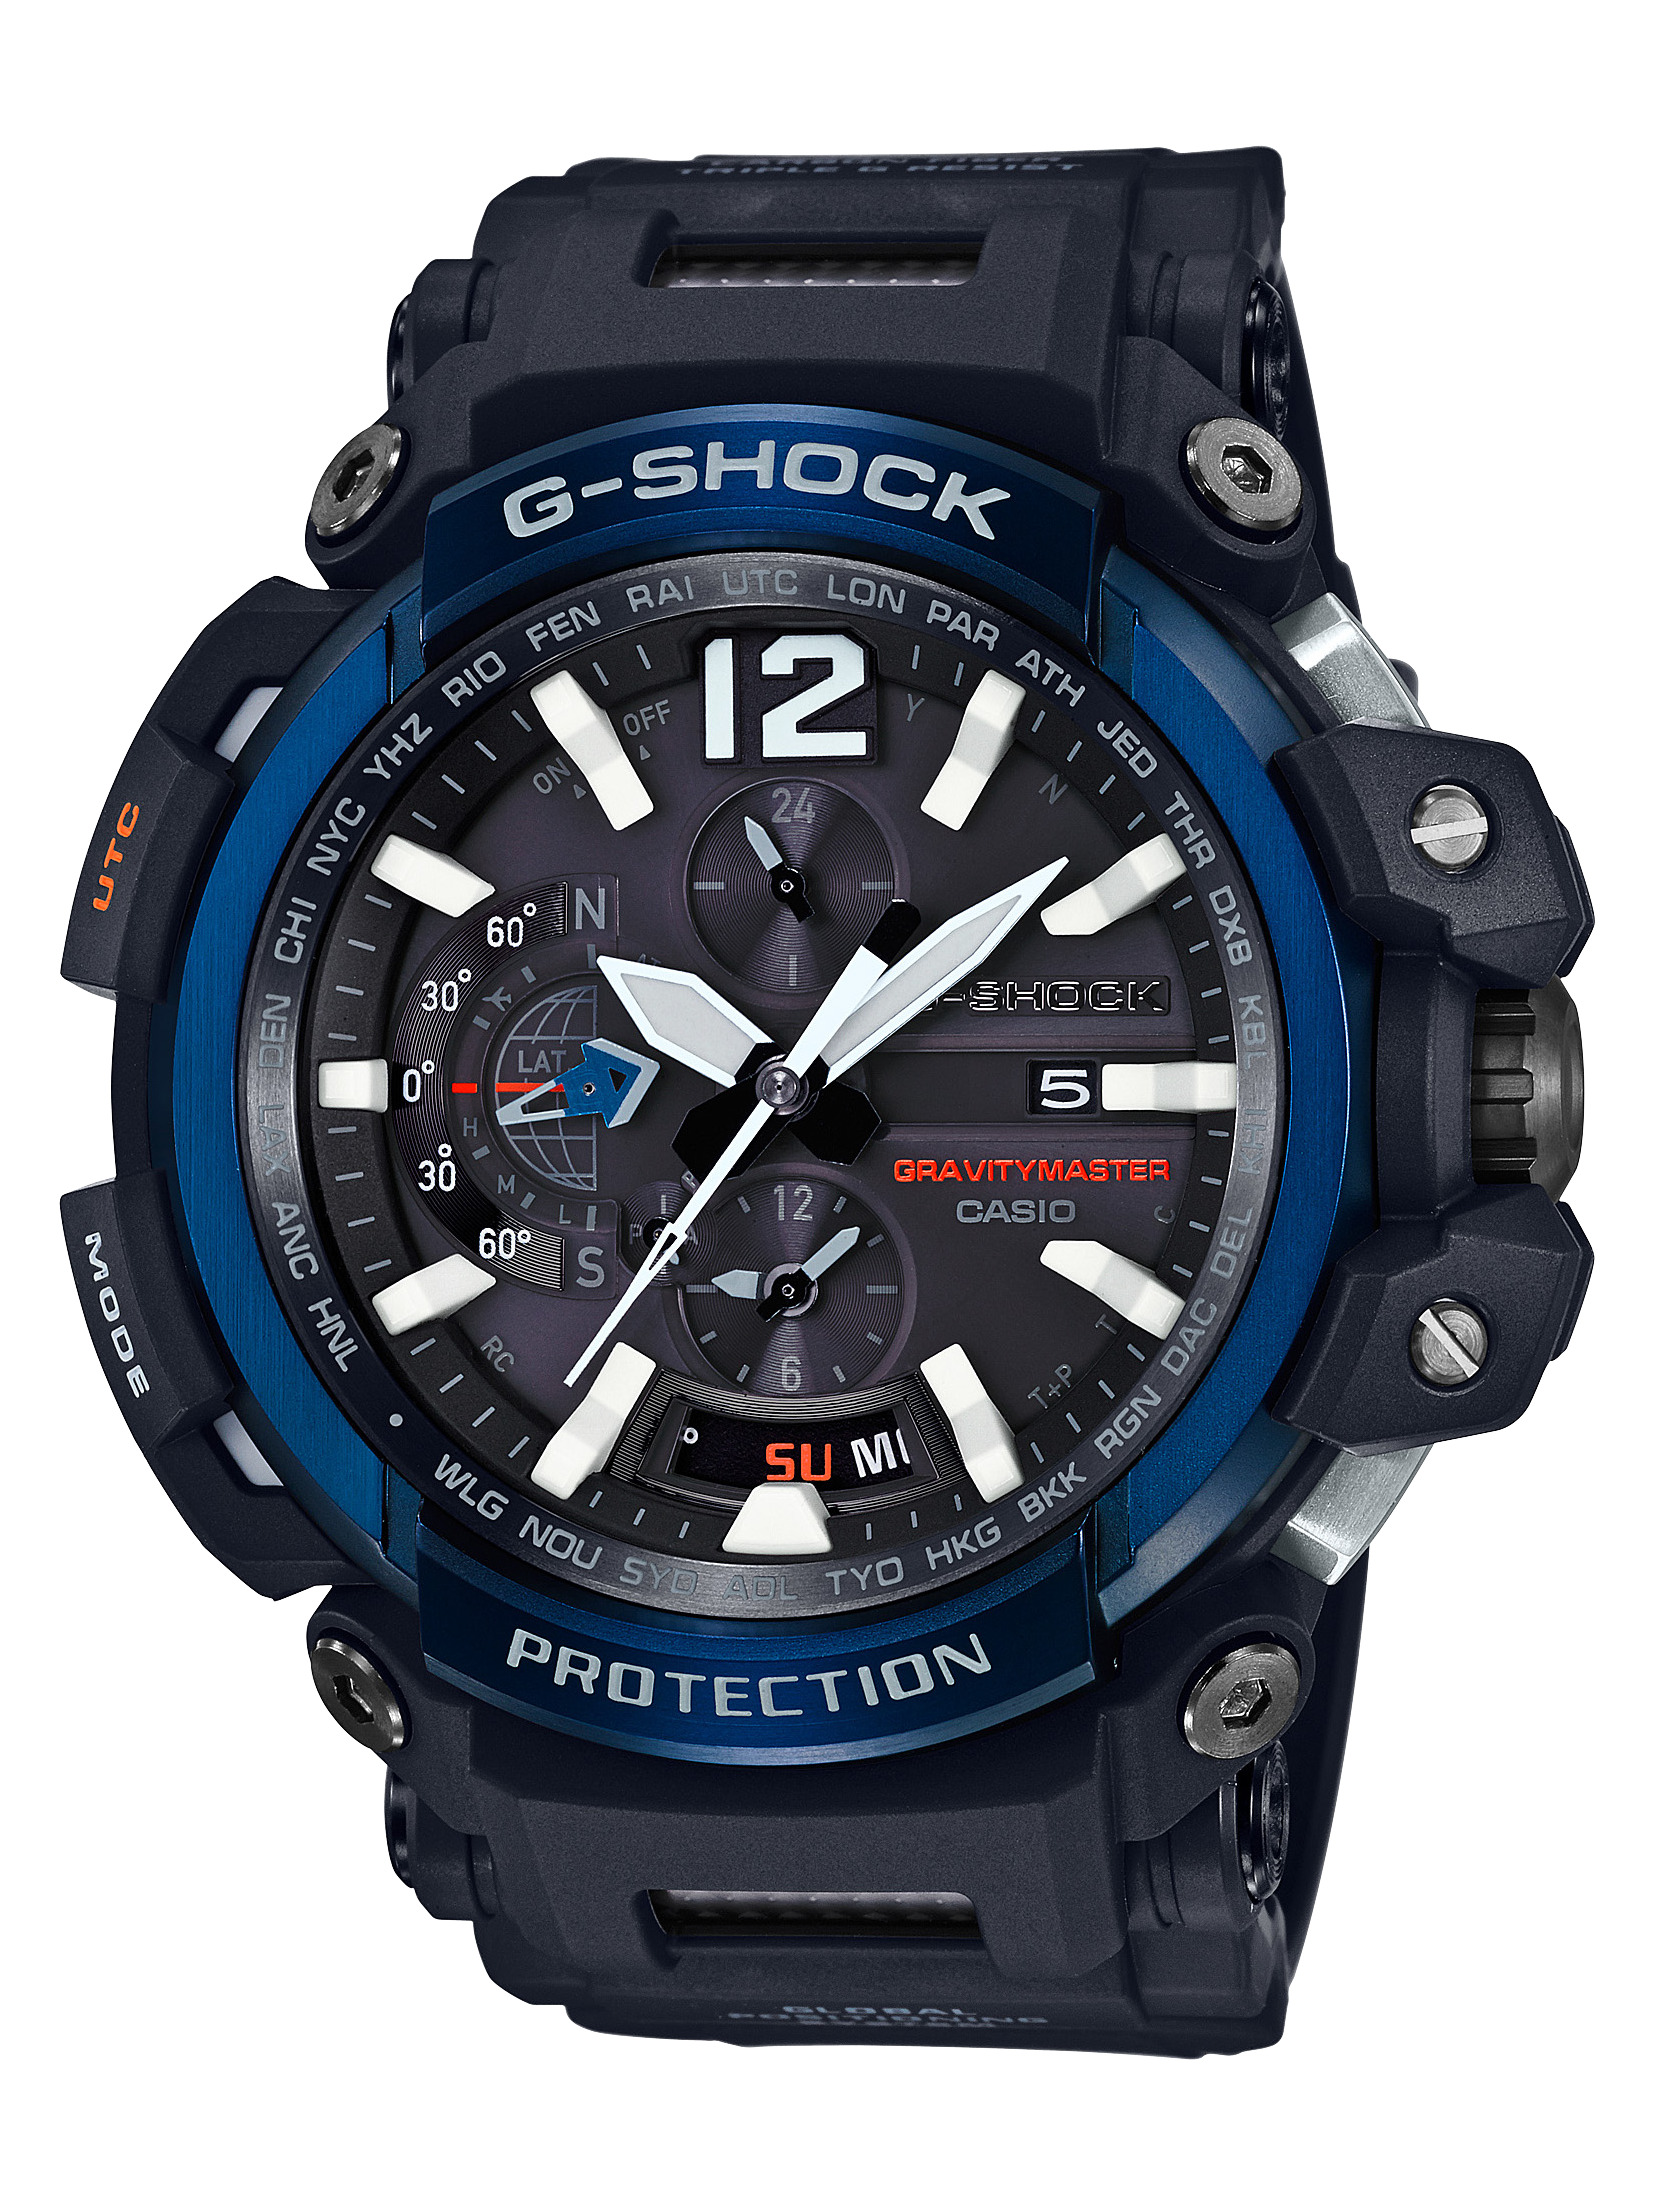 ふるさと納税 CASIO腕時計 限定品 人気ブランド G-SHOCK GPW-2000-1A2JF C-0103